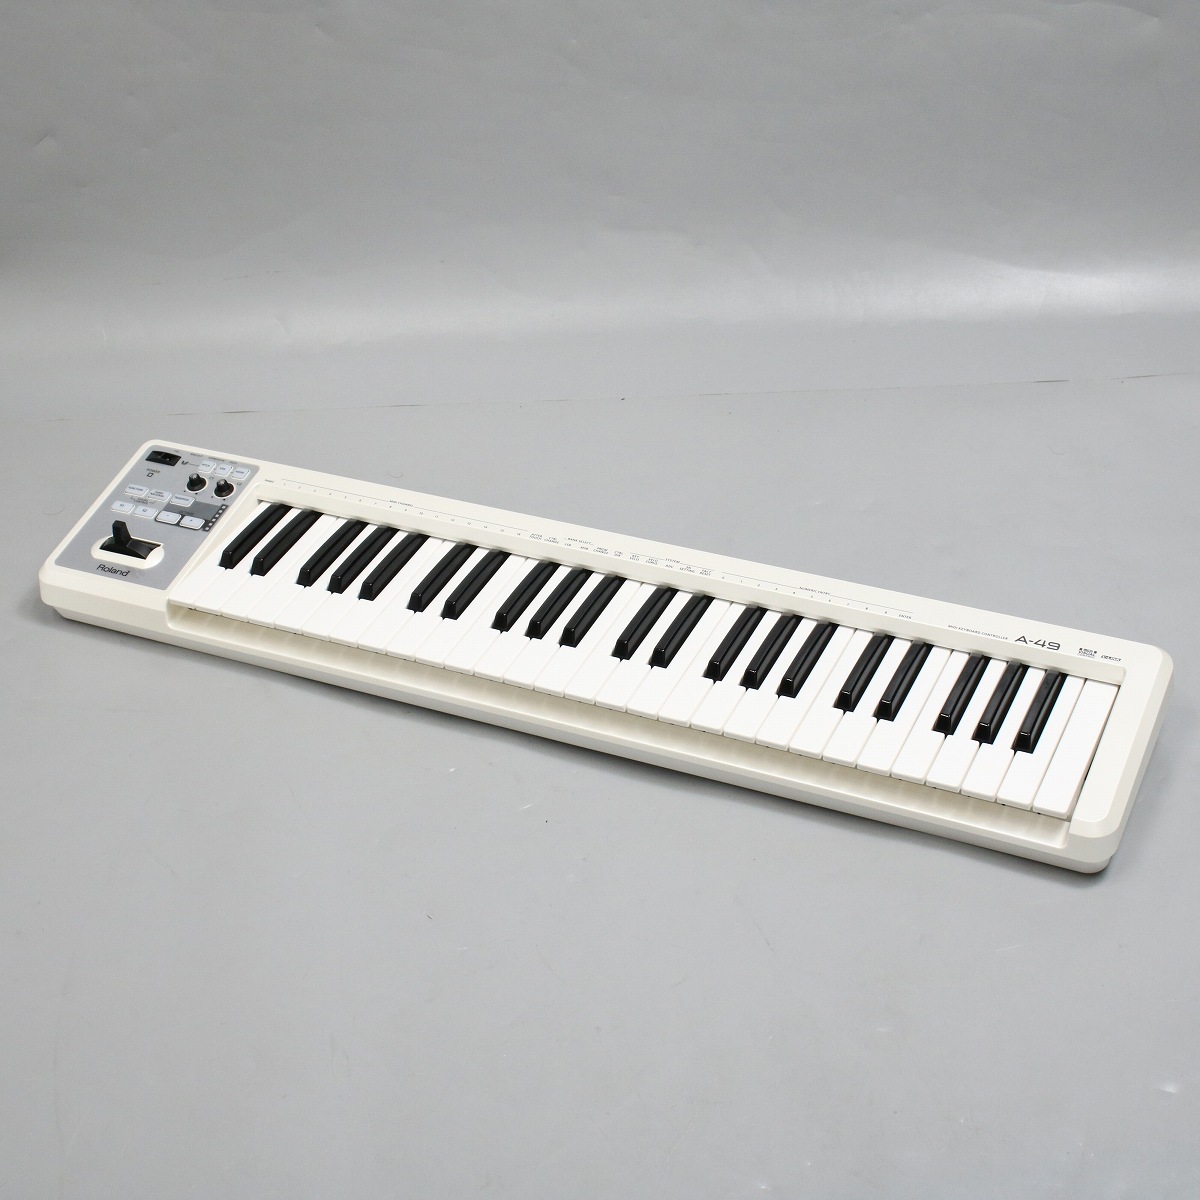 中古】Roland / A-49 WH 49鍵MIDIキーボード(A49) 【再生品特価